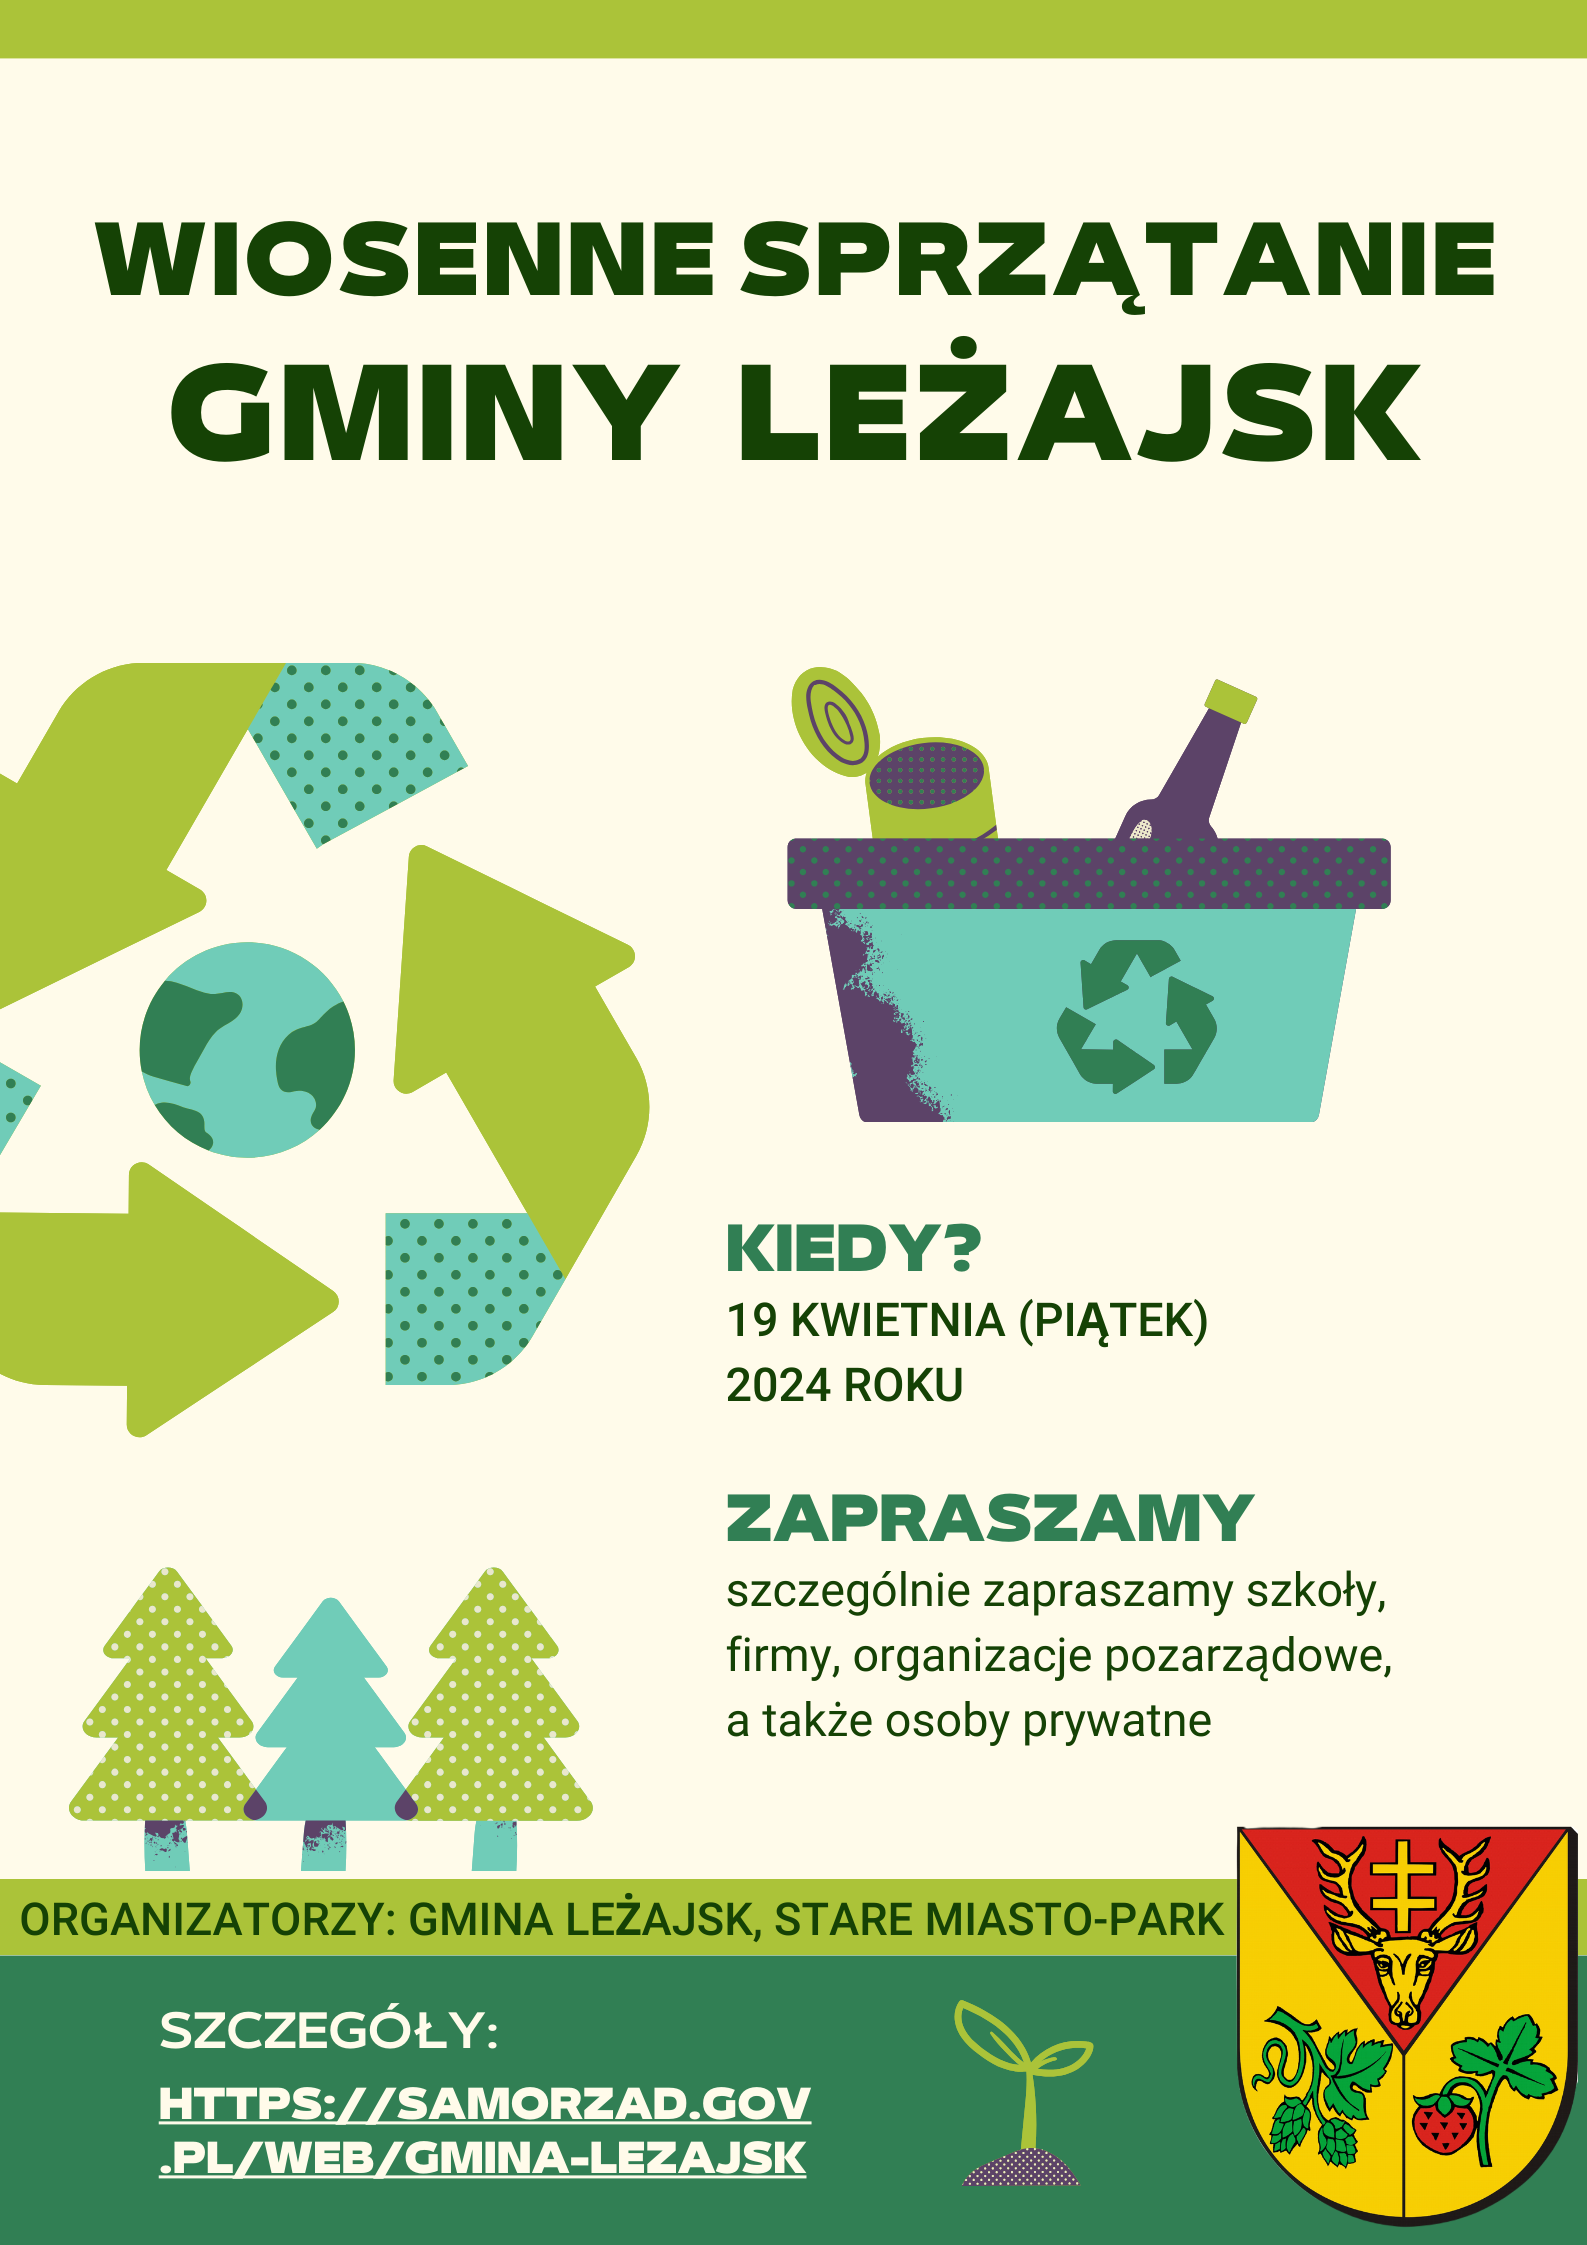 Wiosenne sprzątanie gminy Leżajsk